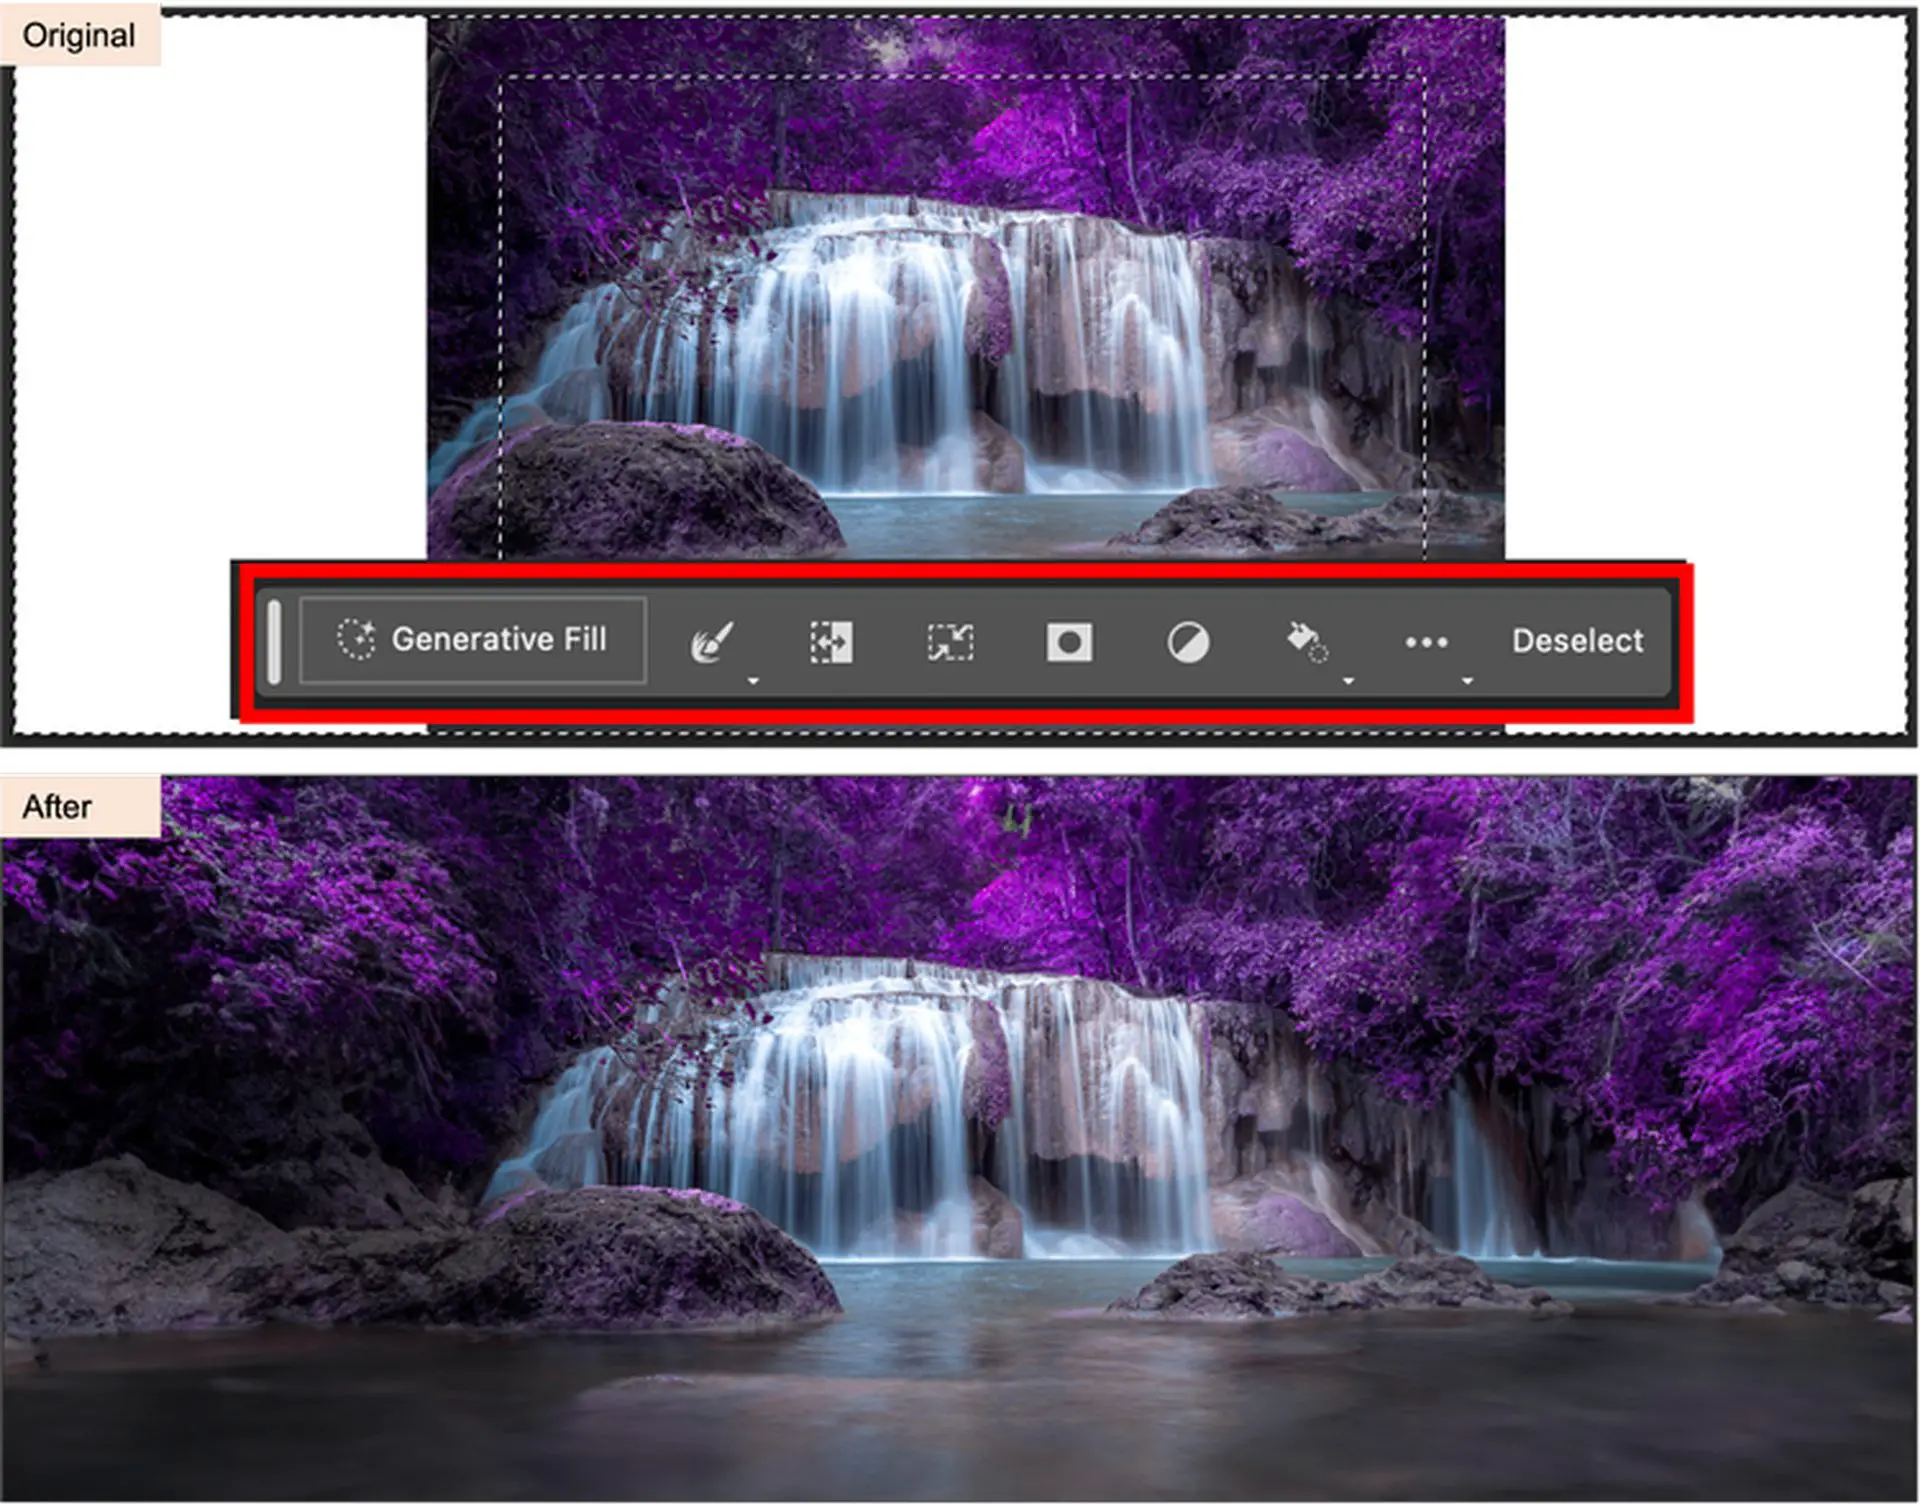 Adobe Photoshop AI: Tìm hiểu cách sử dụng tính năng tô sáng tạo trong Photoshop và tìm hiểu các tính năng của tính năng tô sáng tạo trong Photoshop. Hãy tiếp tục đọc và khám phá!